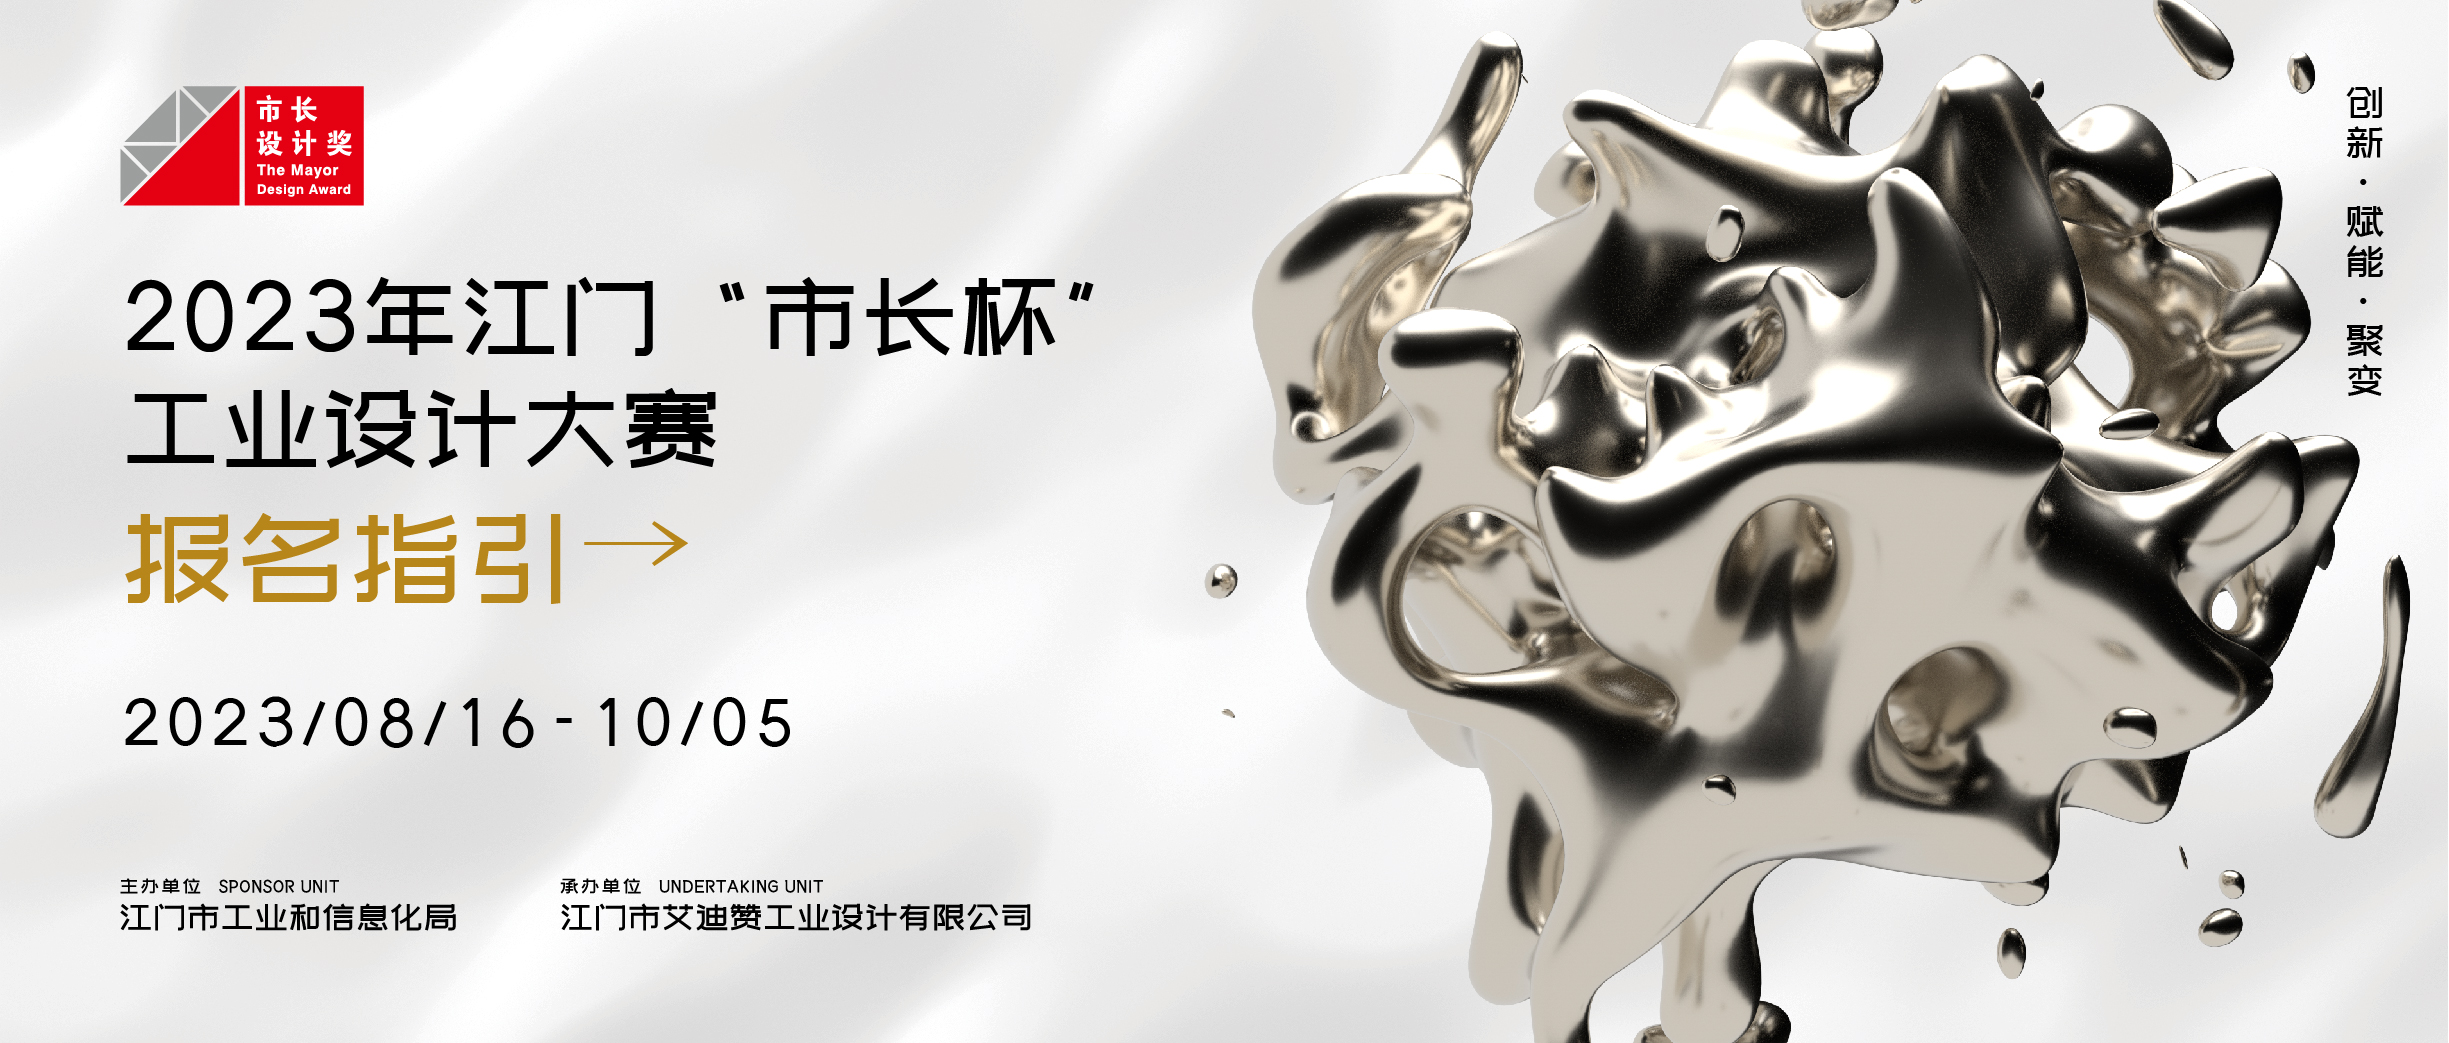 报名指引丨2023年江门“市长杯”工业设计大赛